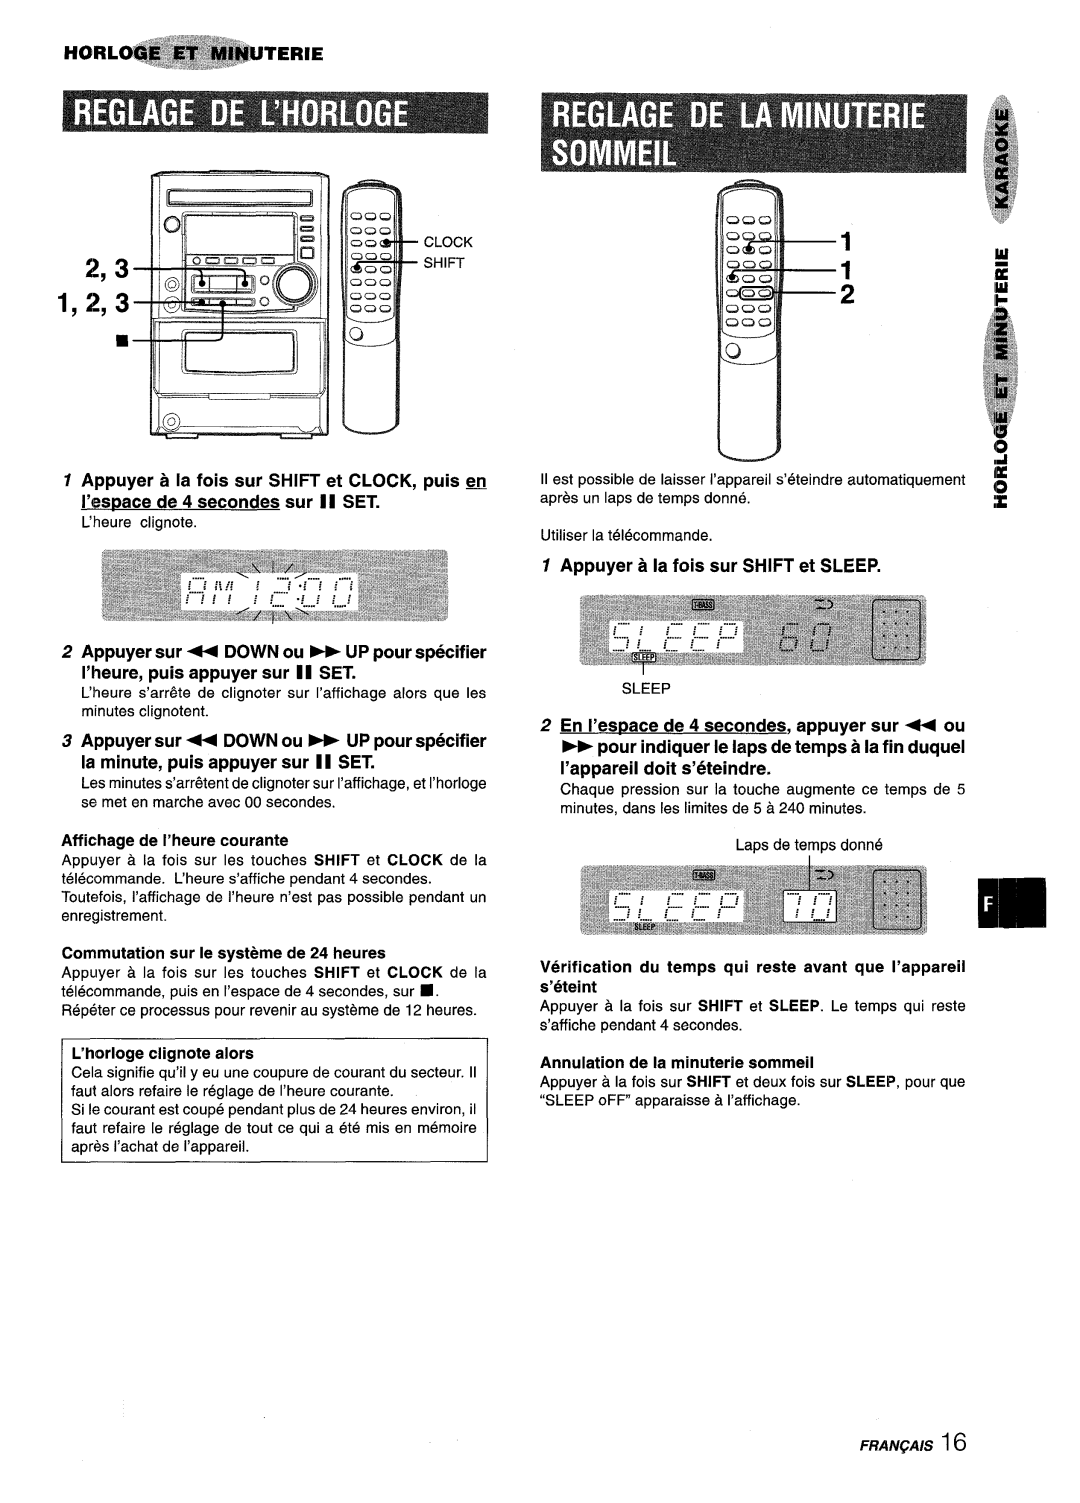 Aiwa XM-M25 manual 1,2,3, n902, Appuyer a la fois sur SHIFT et CLOCK, puis ~, I’espace de 4 secondes sur II SET 